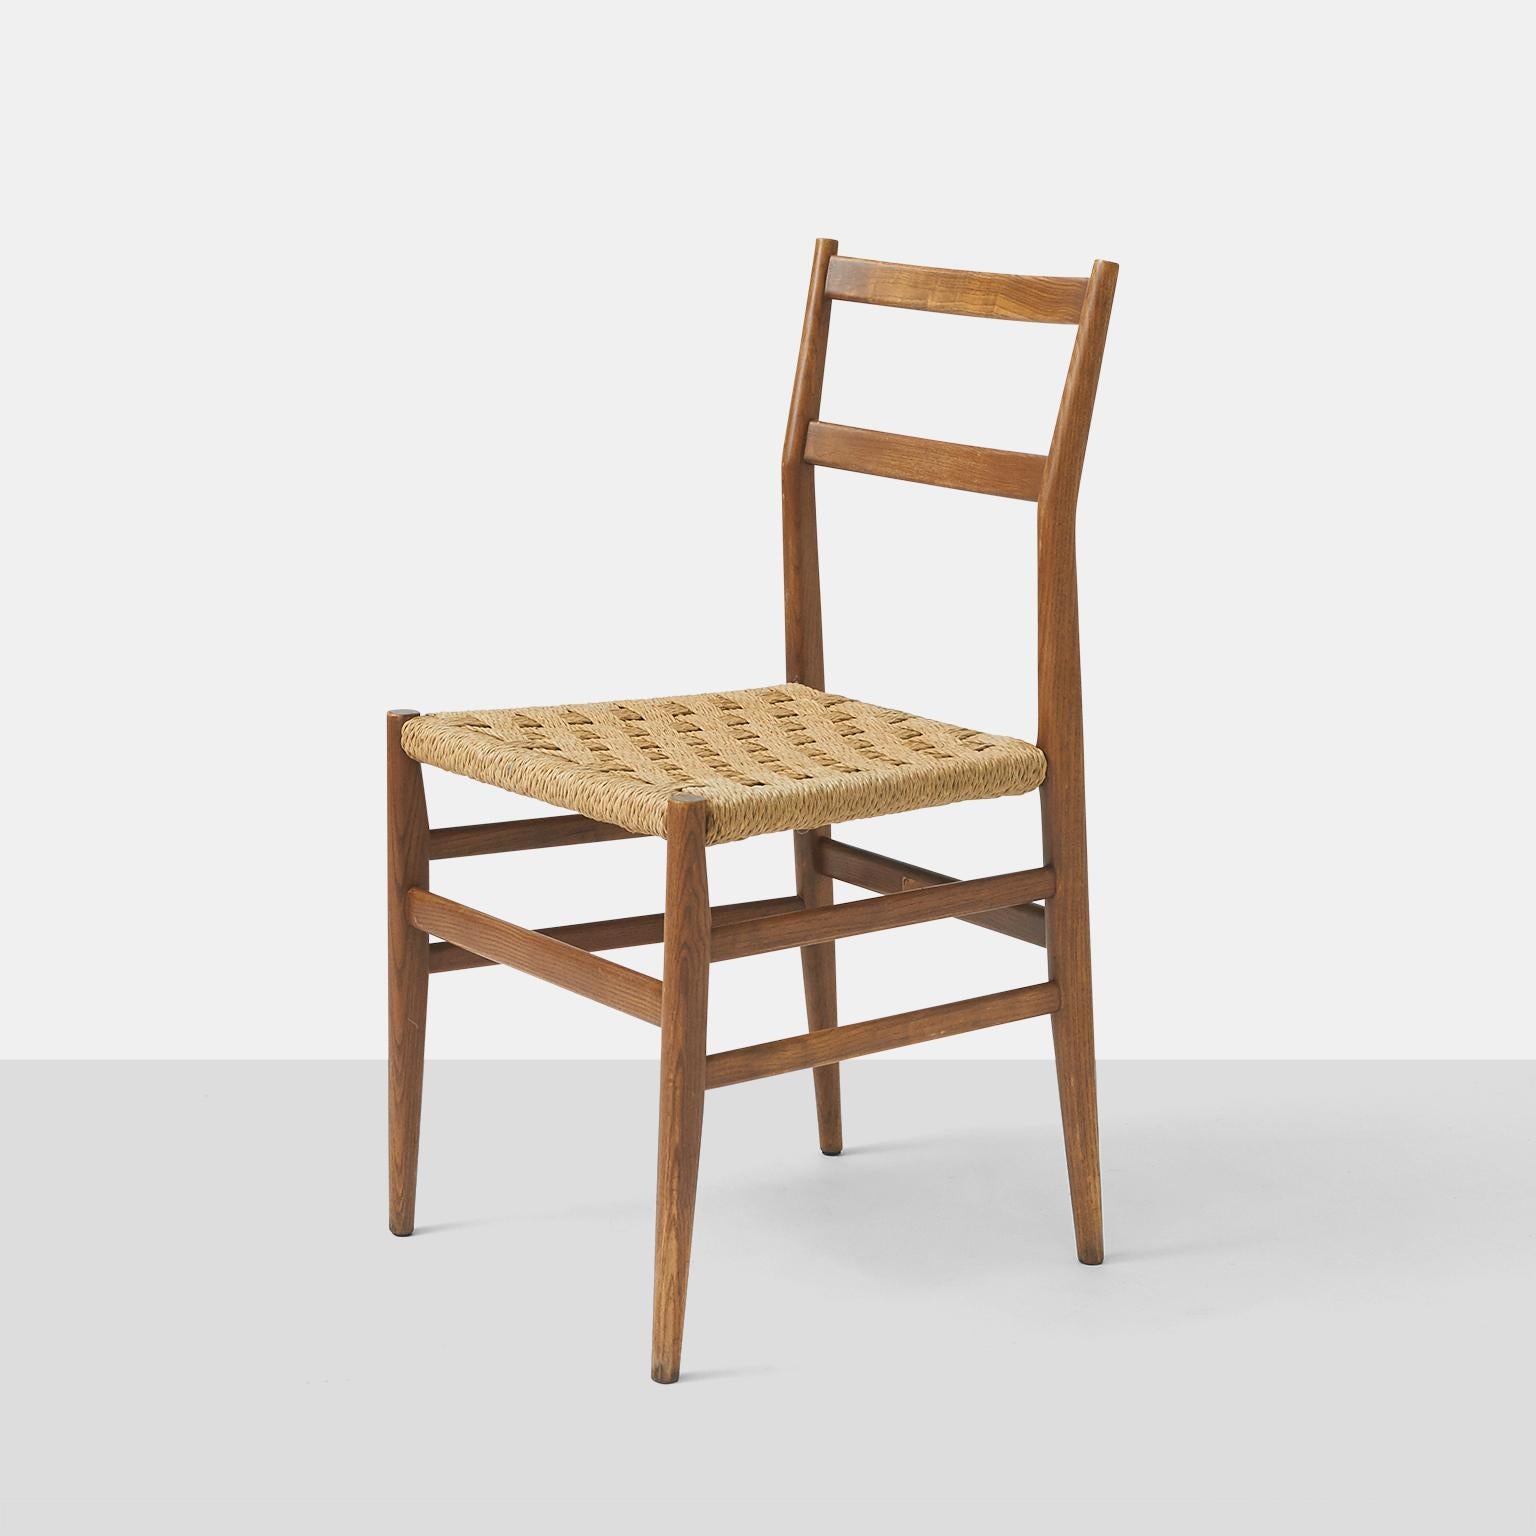 Paire de chaises de salle à manger de Gio Ponti en frêne avec des sièges en jonc tressé dans un motif de panier, toutes conservant leur étiquette d'origine.

Le prix est fixé pour la paire.